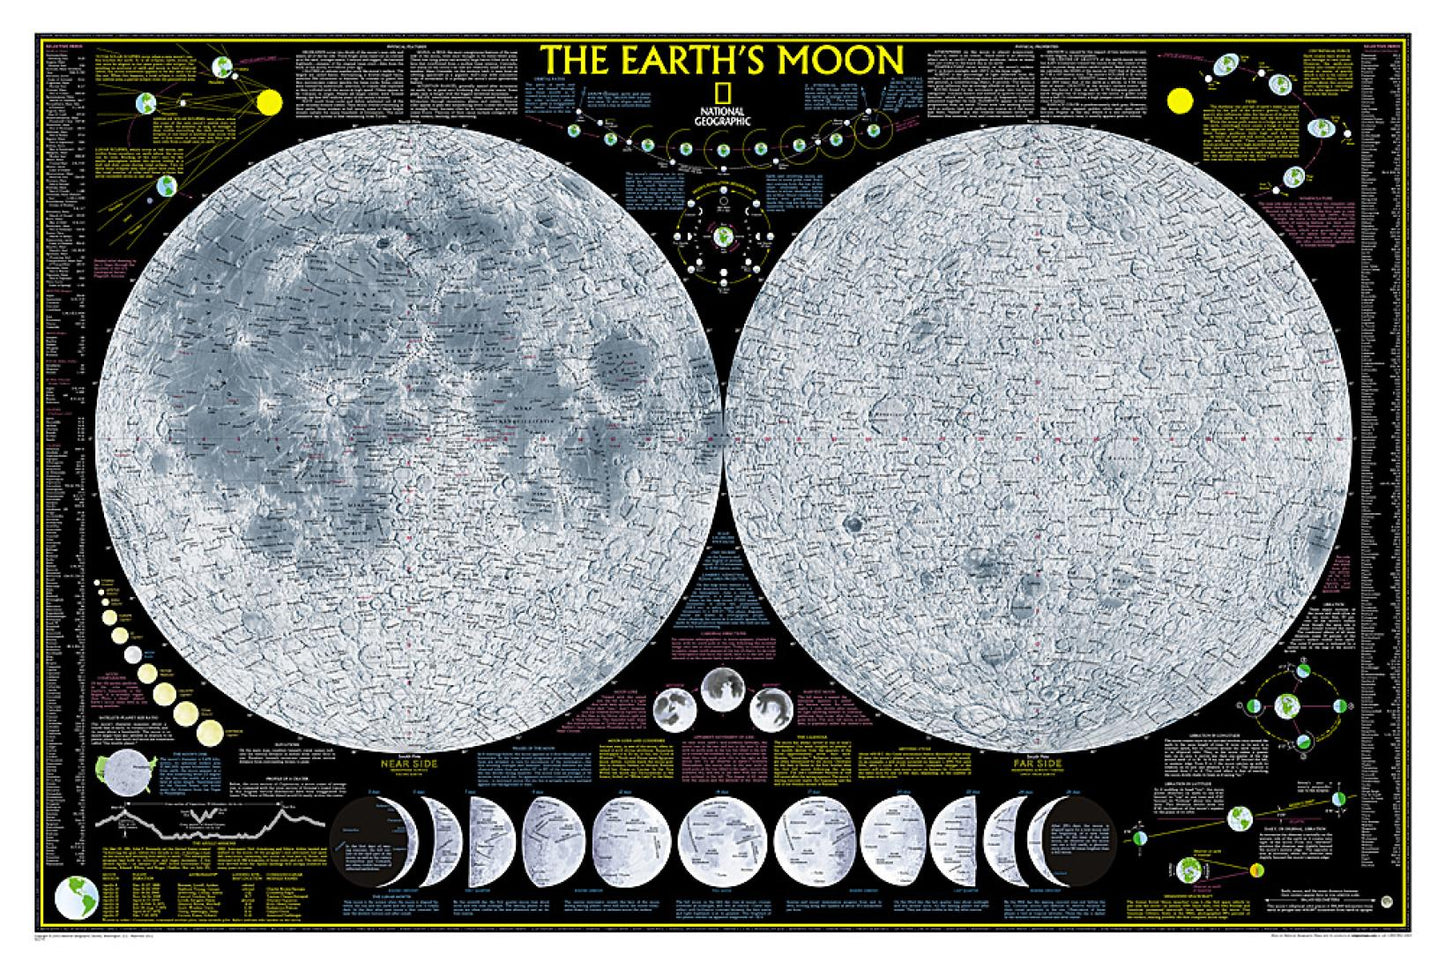 The Earth's Moon = The Moon